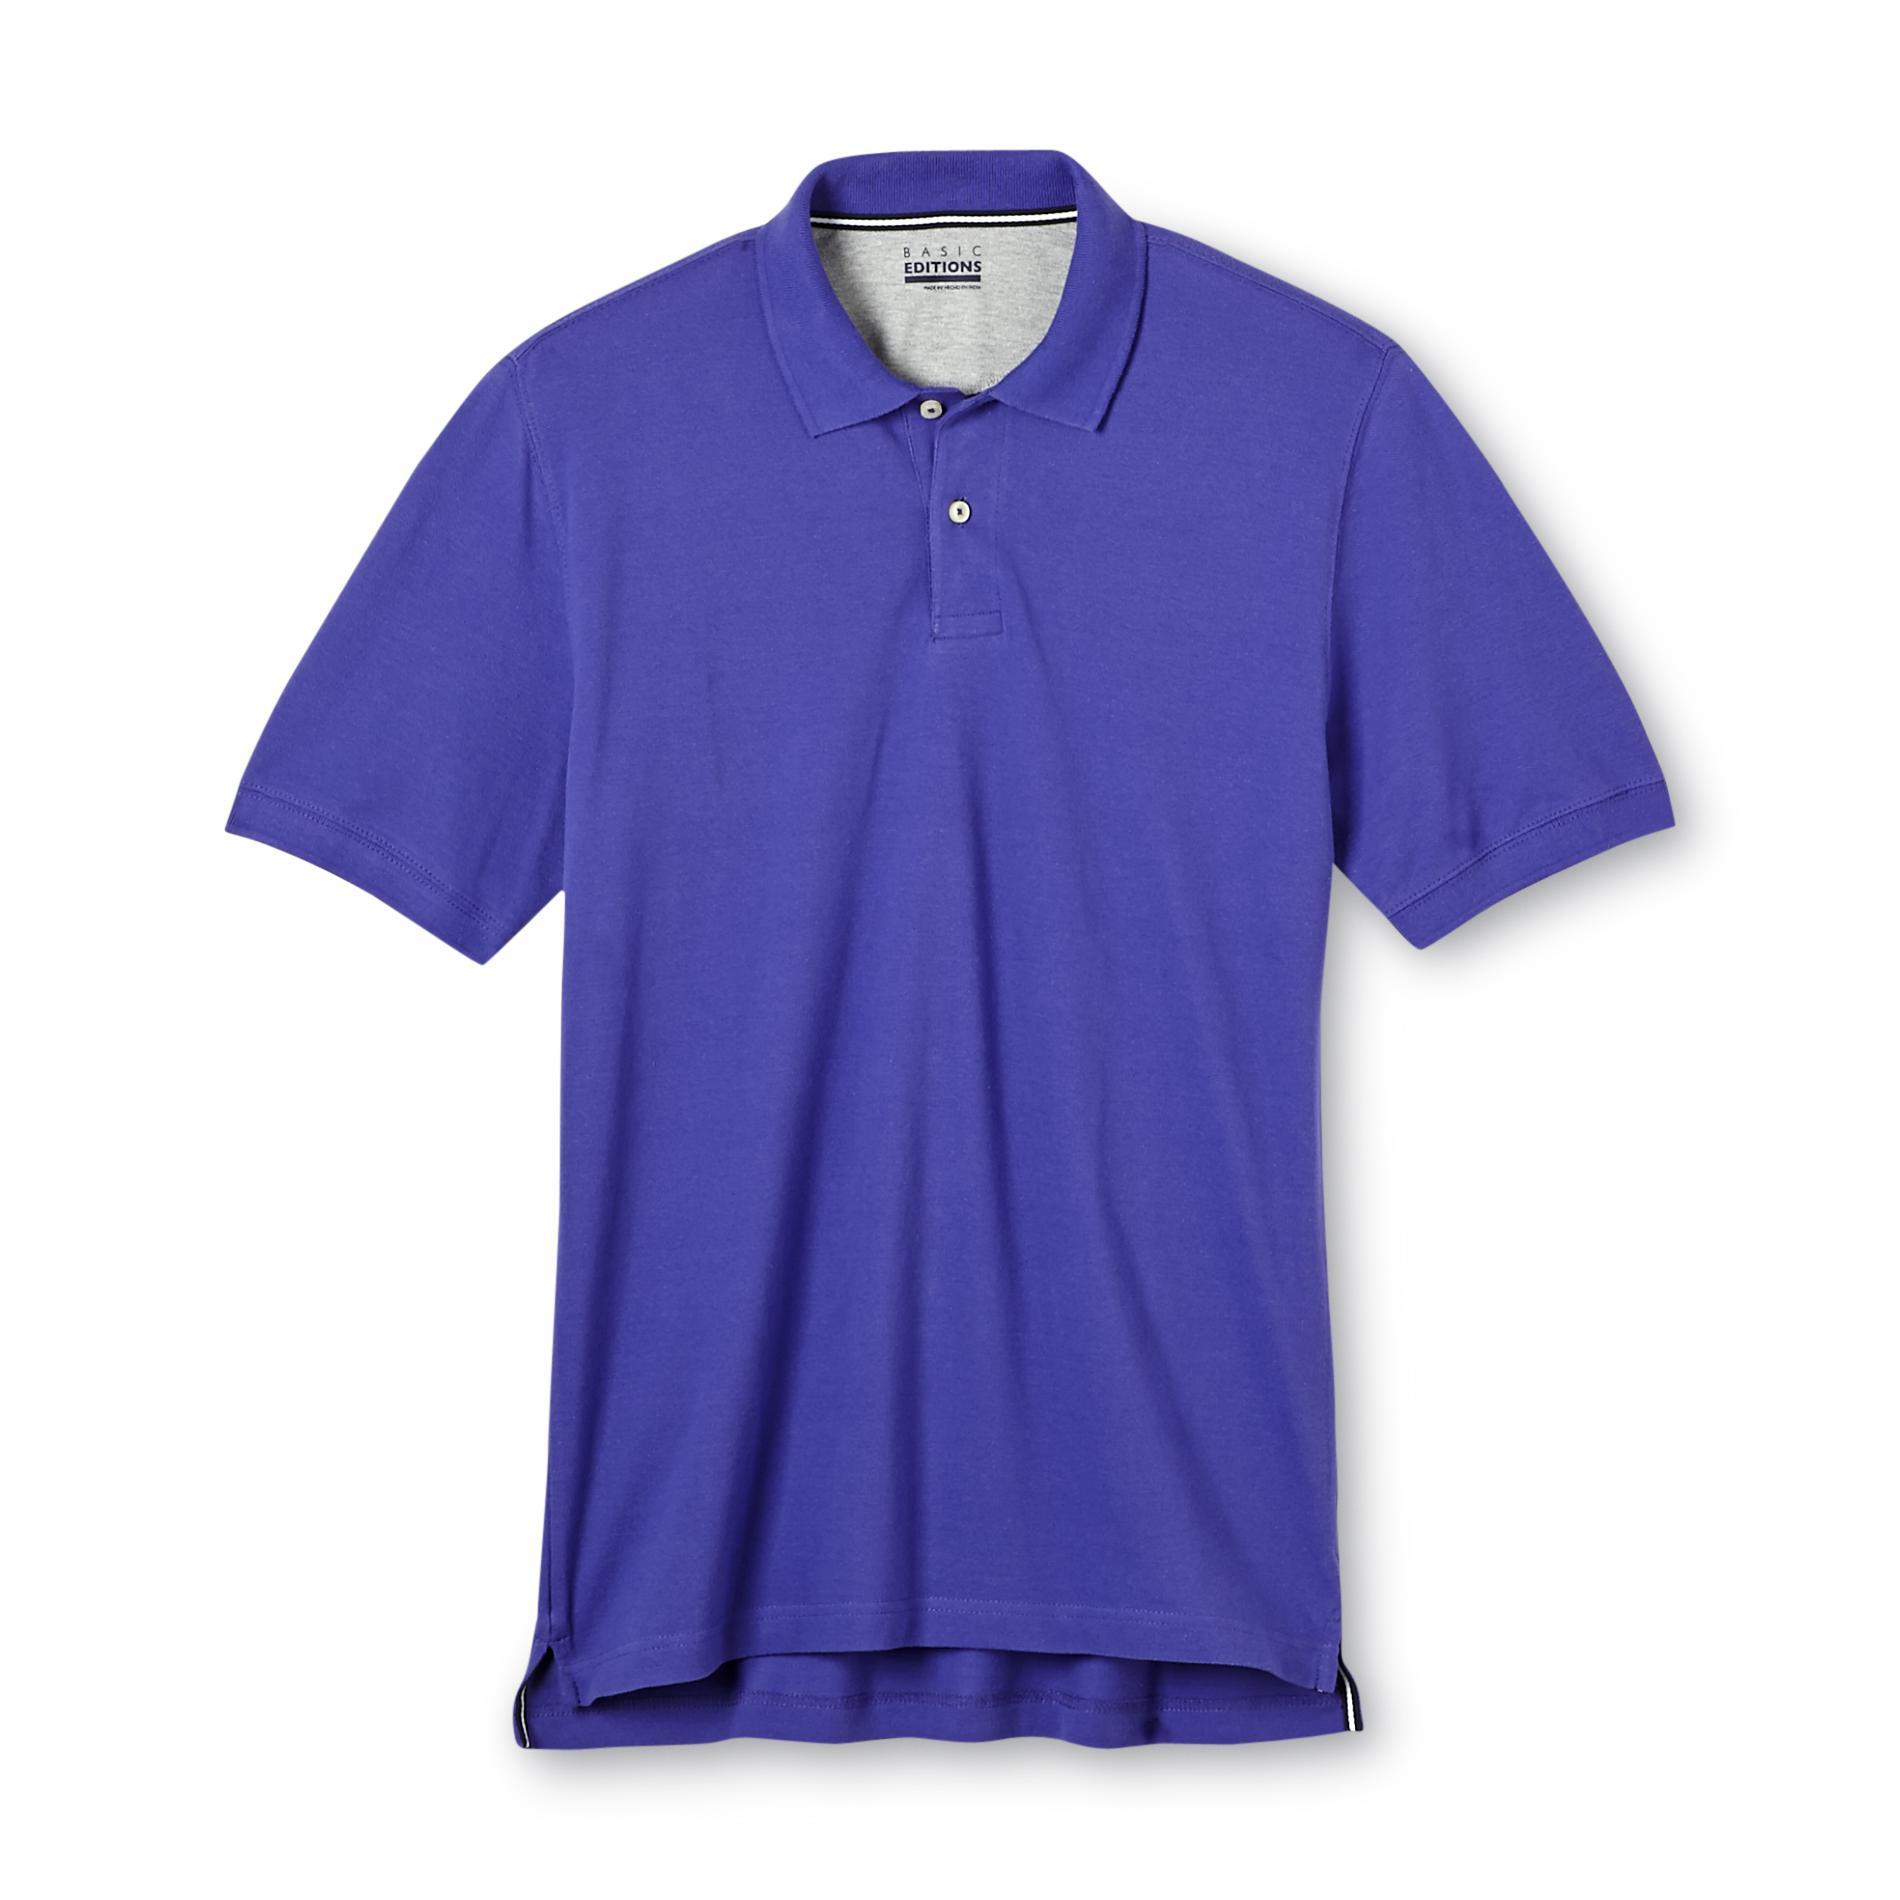 Basic Editions Men's Pique Polo Shirt